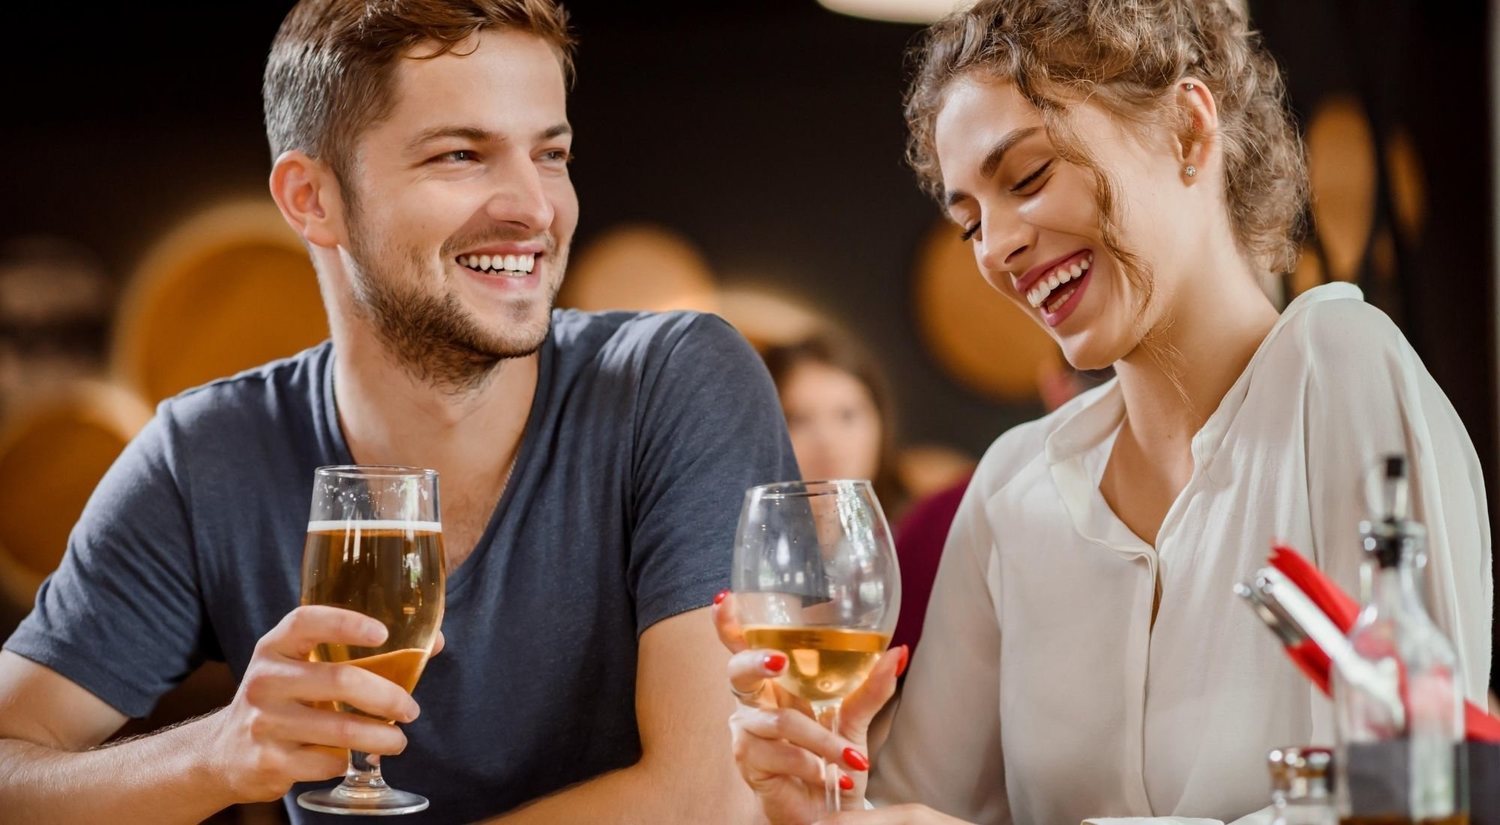 Beber o salir de bares con tu pareja: por qué deberías hacerlo